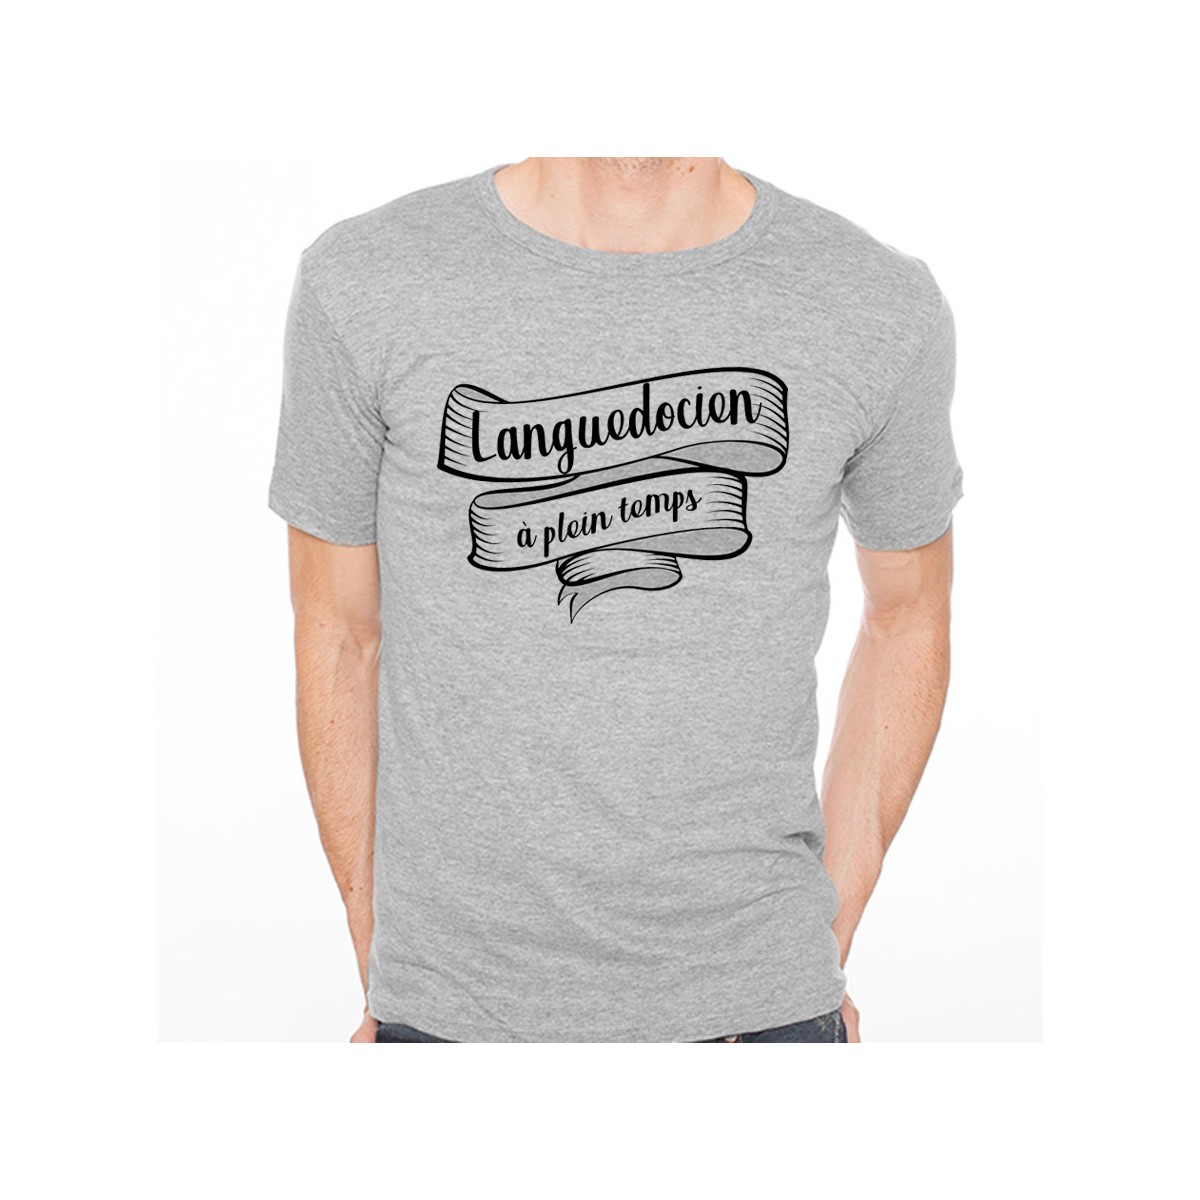 T-shirt Languedocien à plein temps